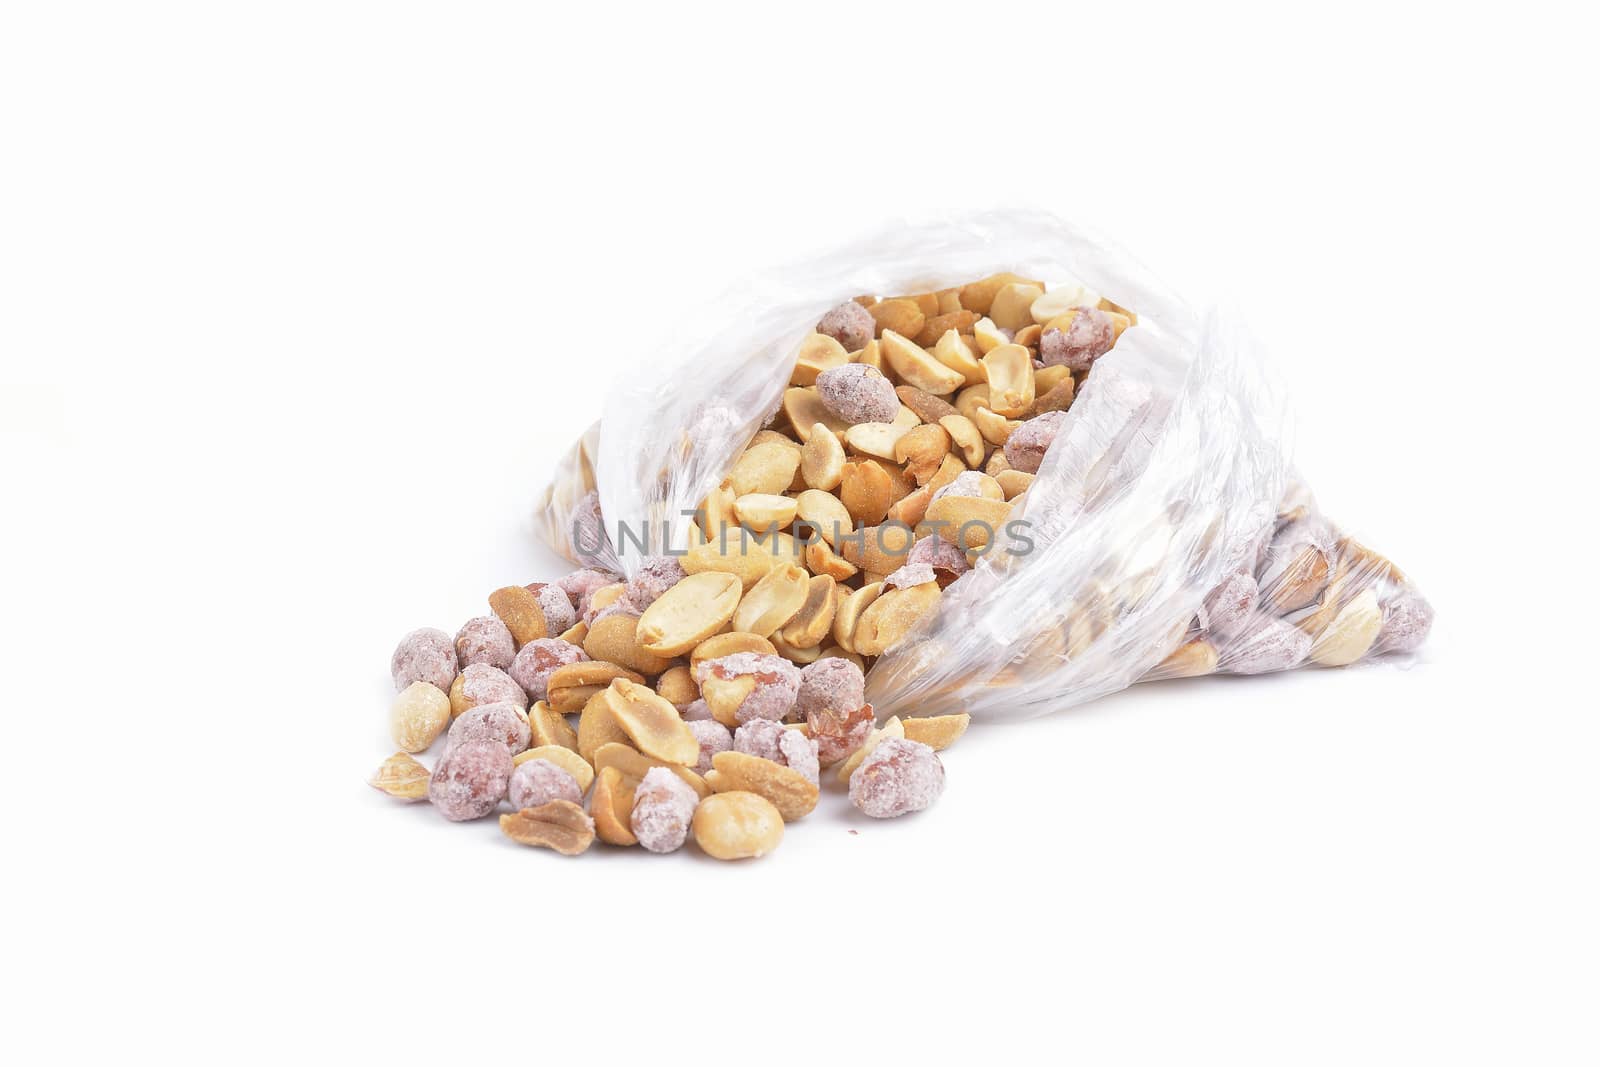 Roasted and salted peanuts